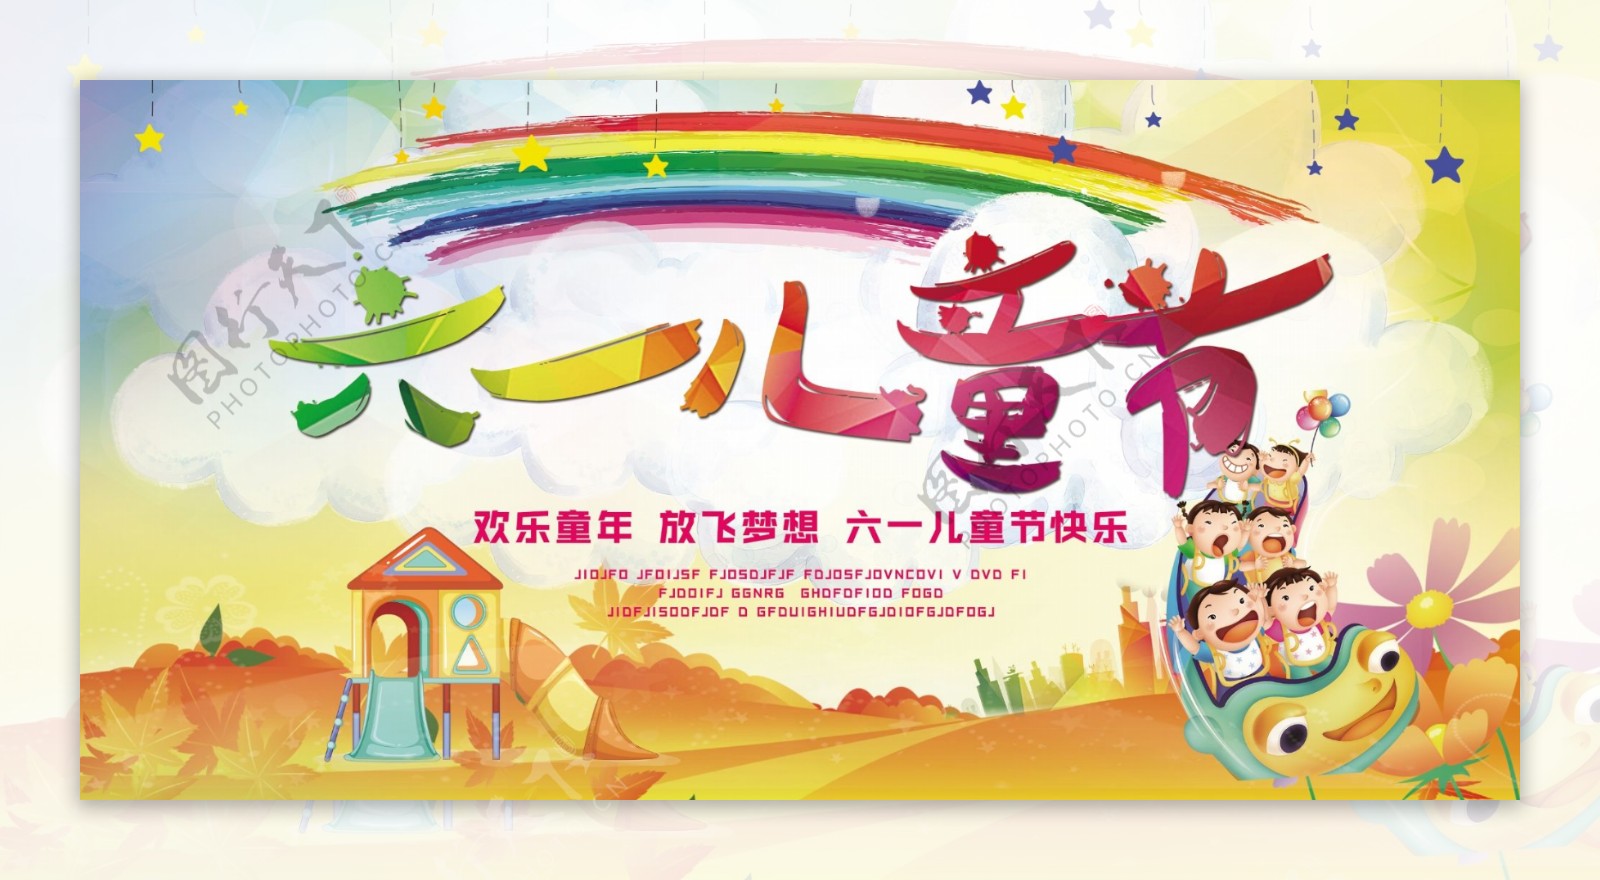 61儿童节快乐活动海报psd